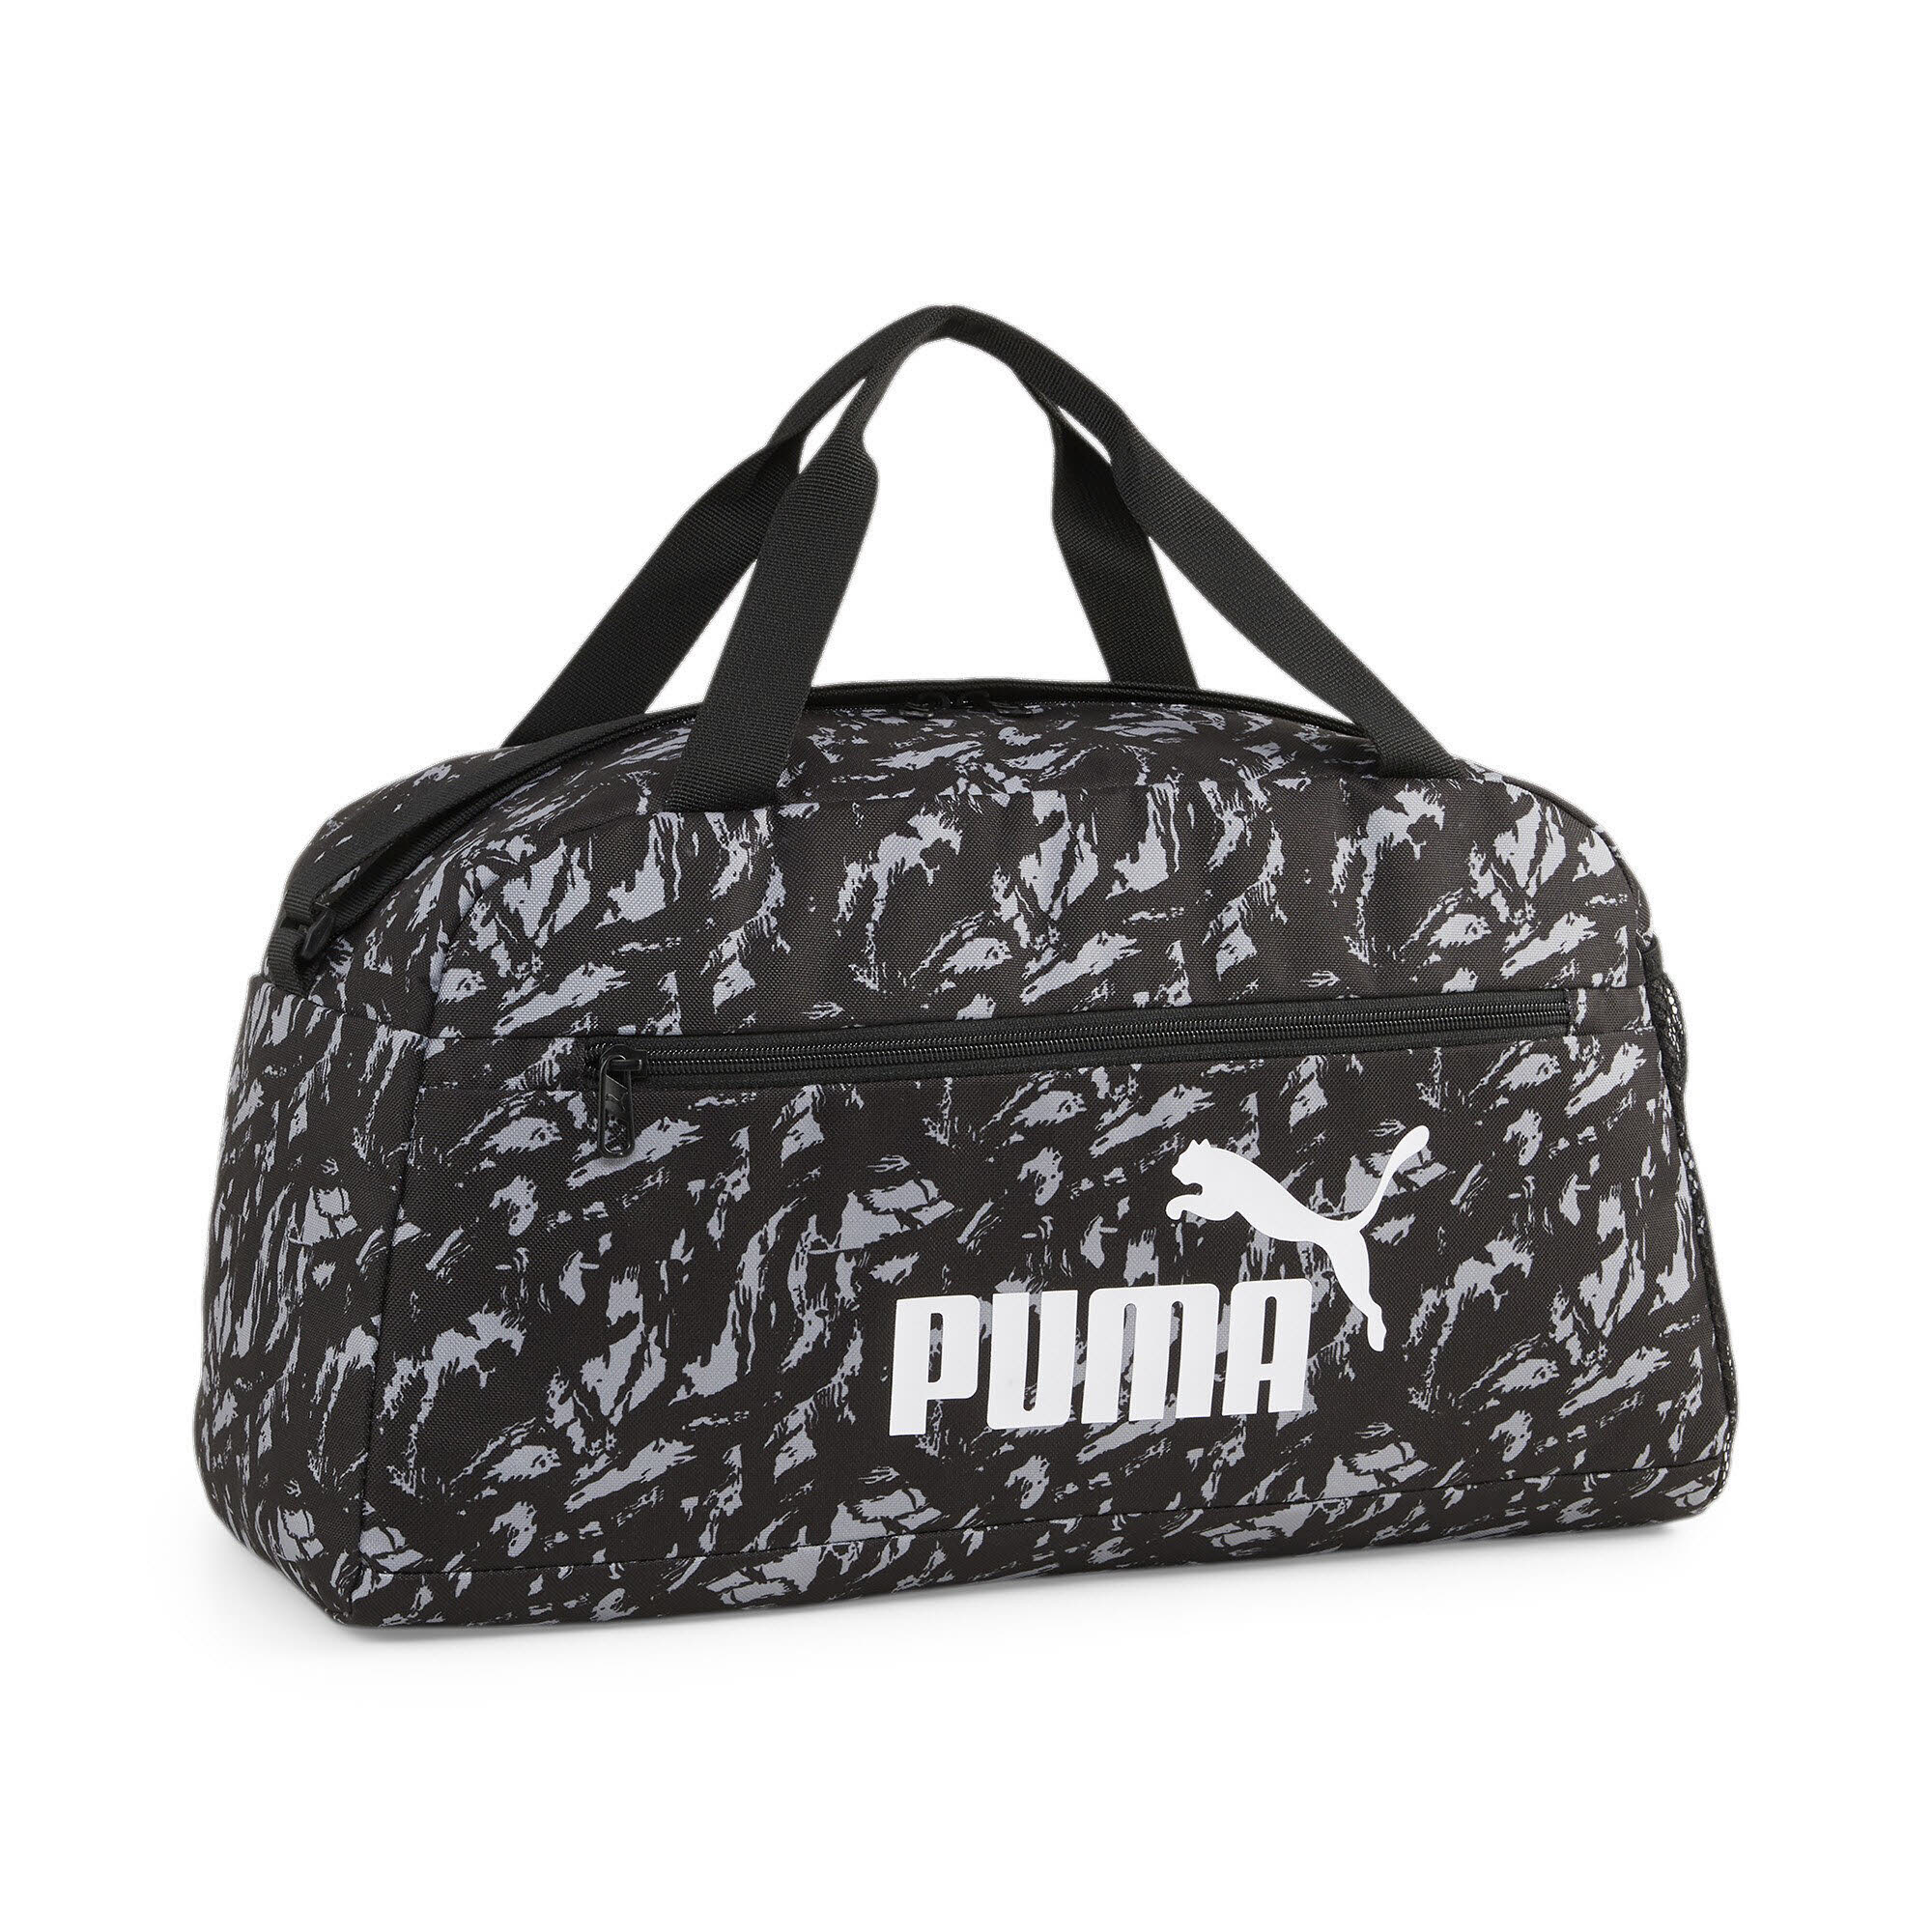 Puma Phase AOP Sports Bag Sporttasche Trainingstasche schwarz weiß